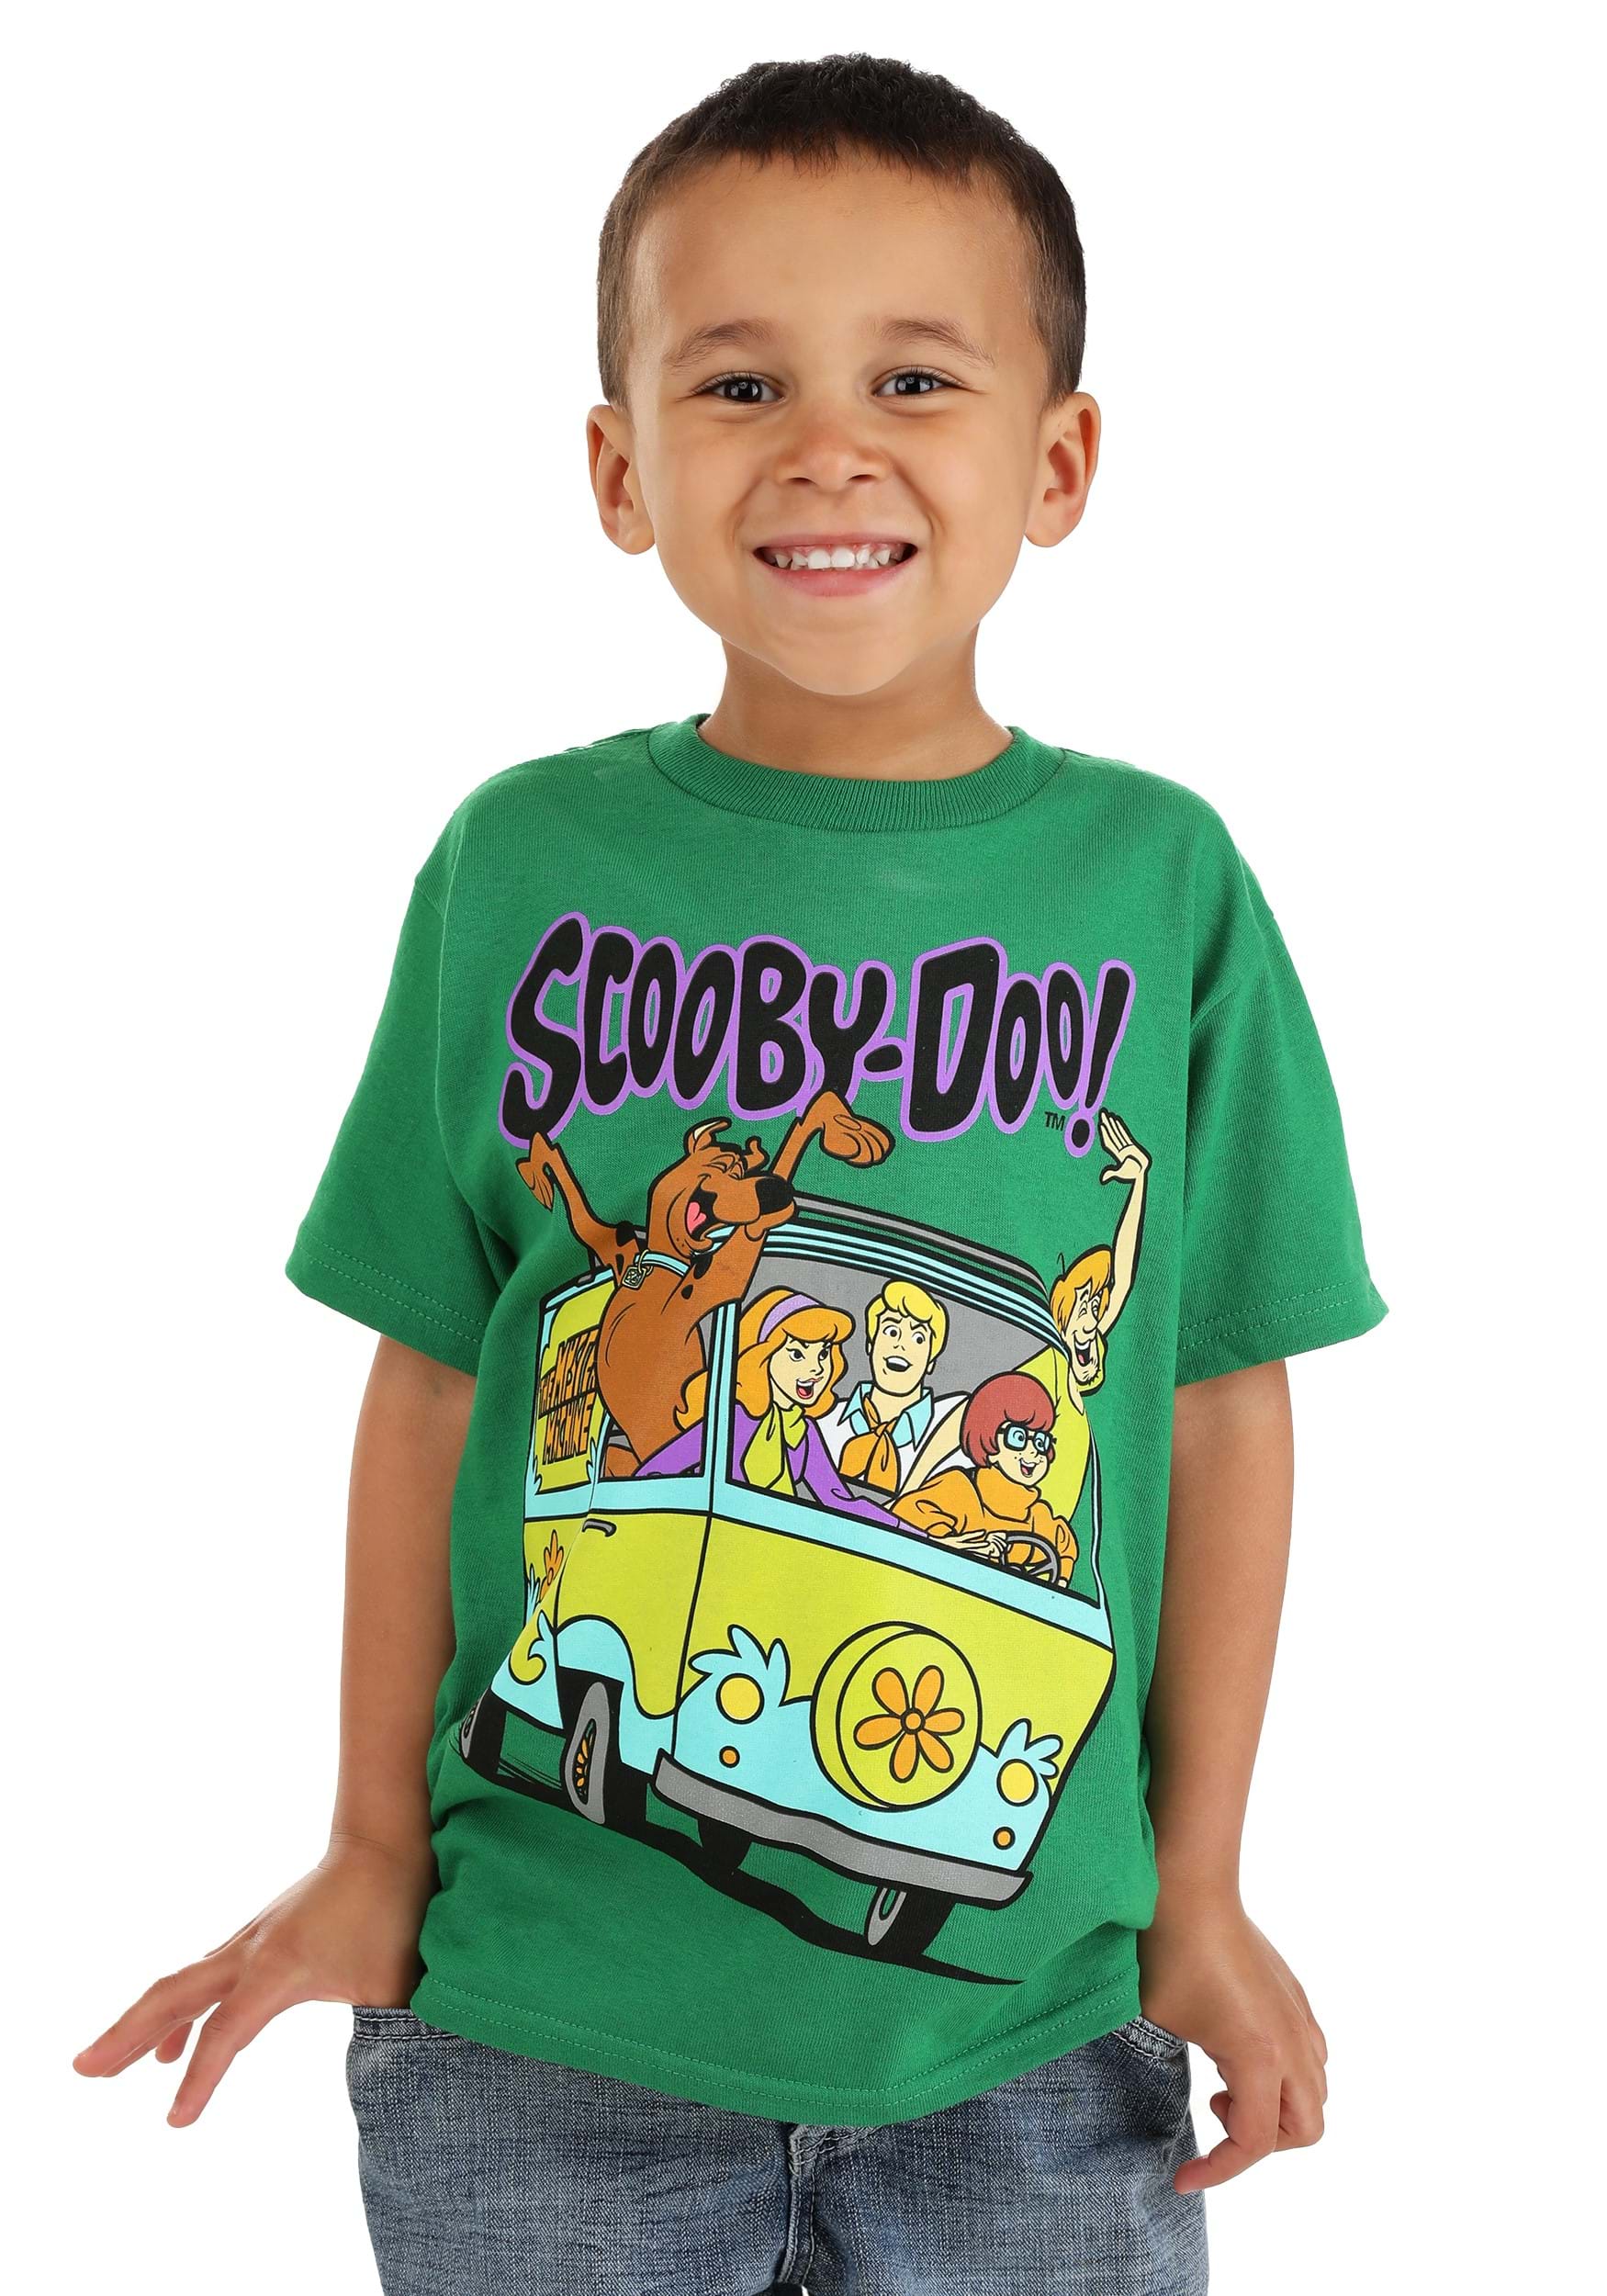 Scooby-Doo The Mystery Machine   Unisex Gift T-Shirt Shirt Gift For Men Women Hoodie Sweatshirt Kid T-Shirt